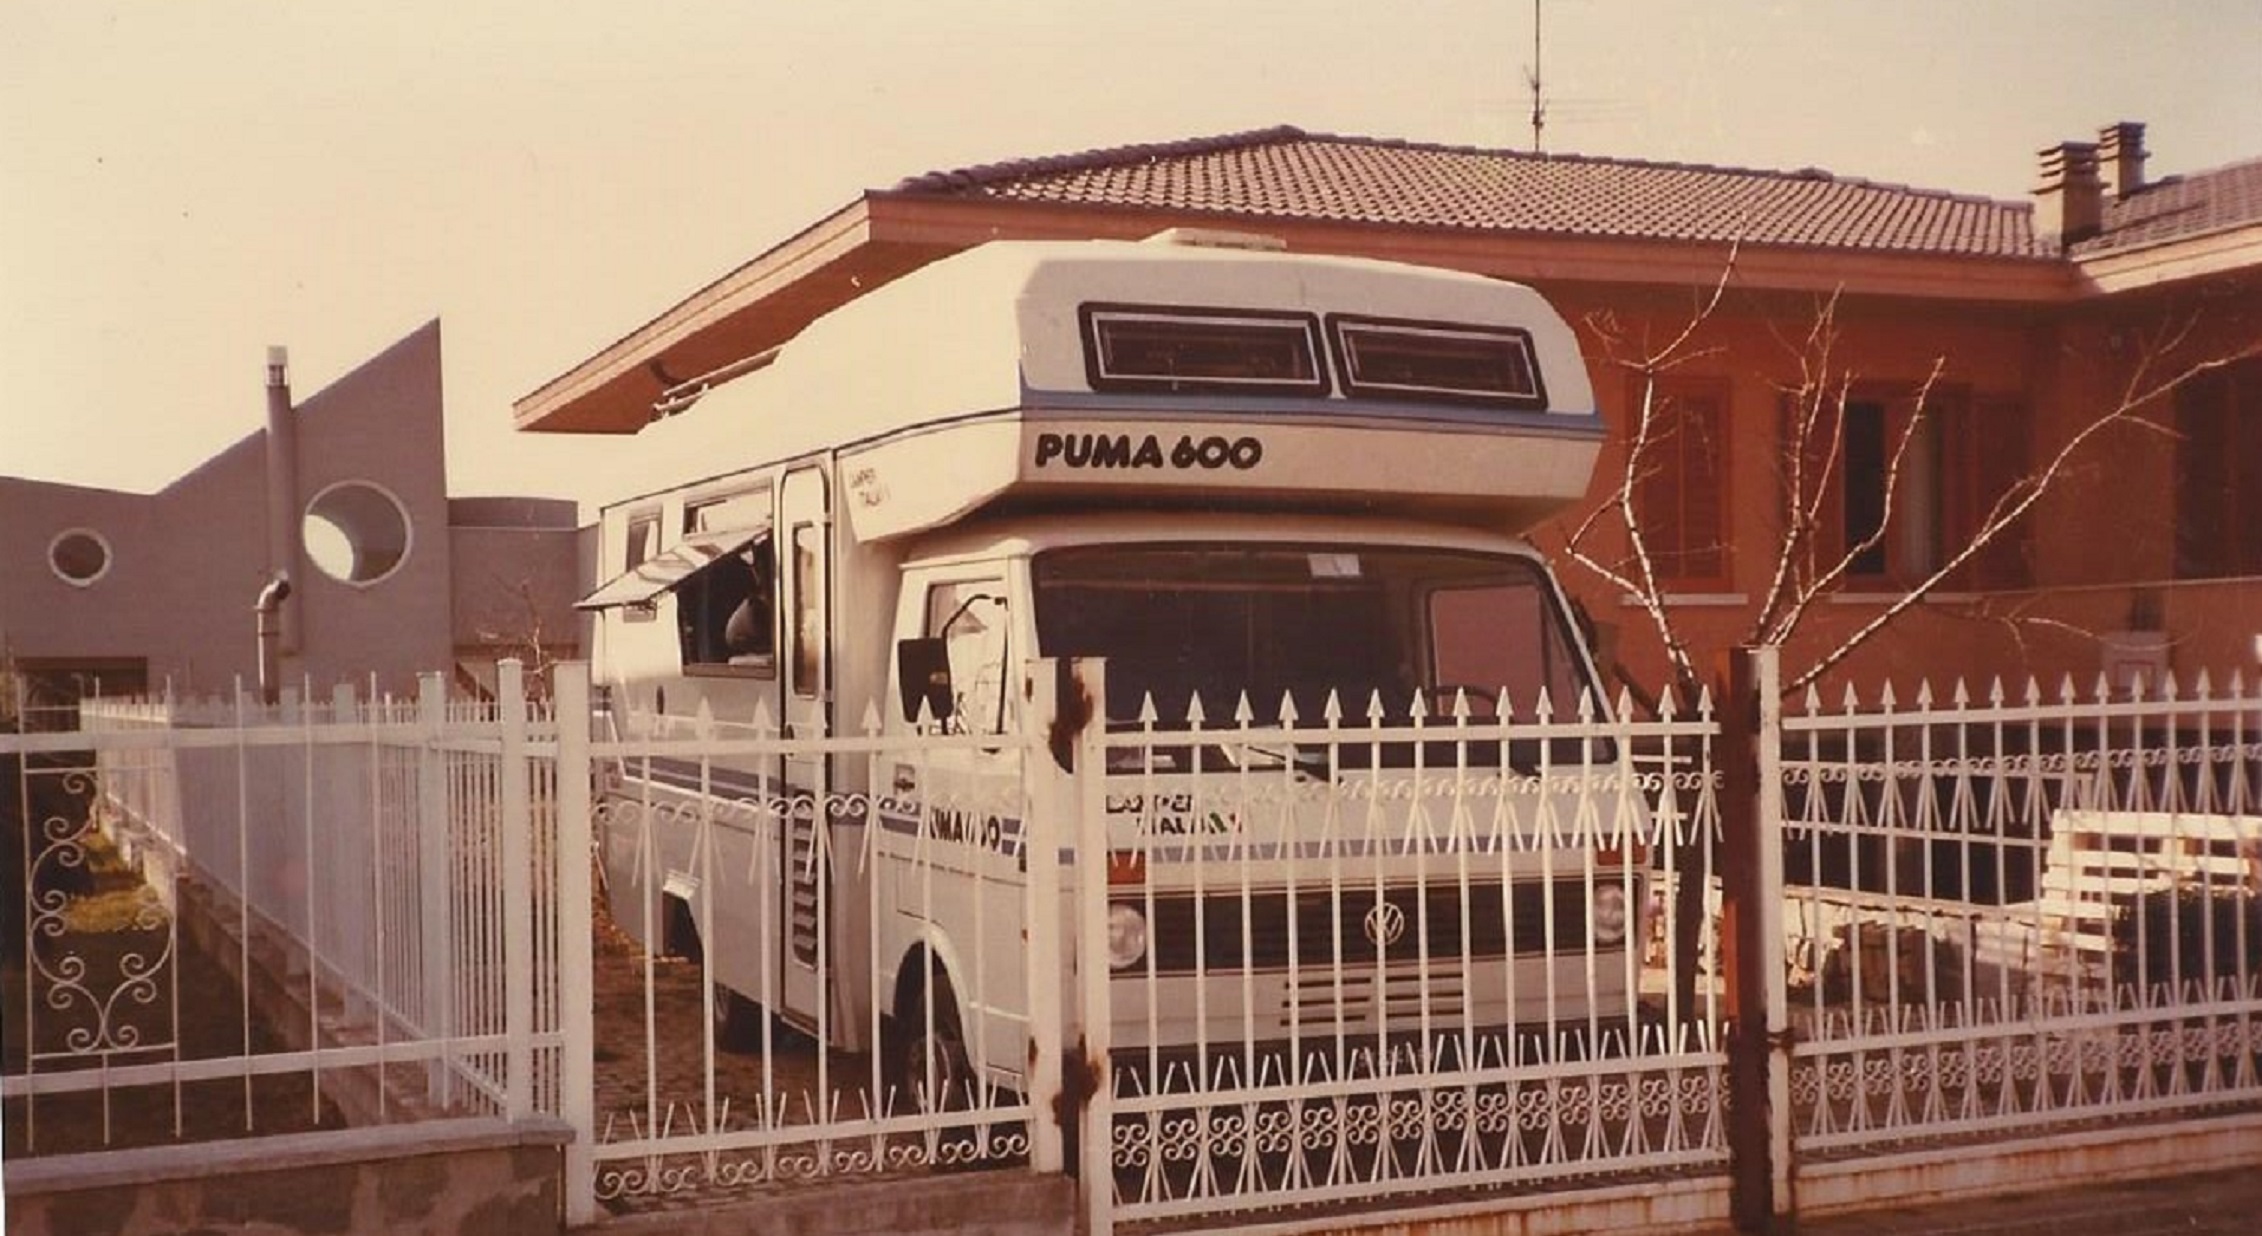 camper italia puma 600 usato